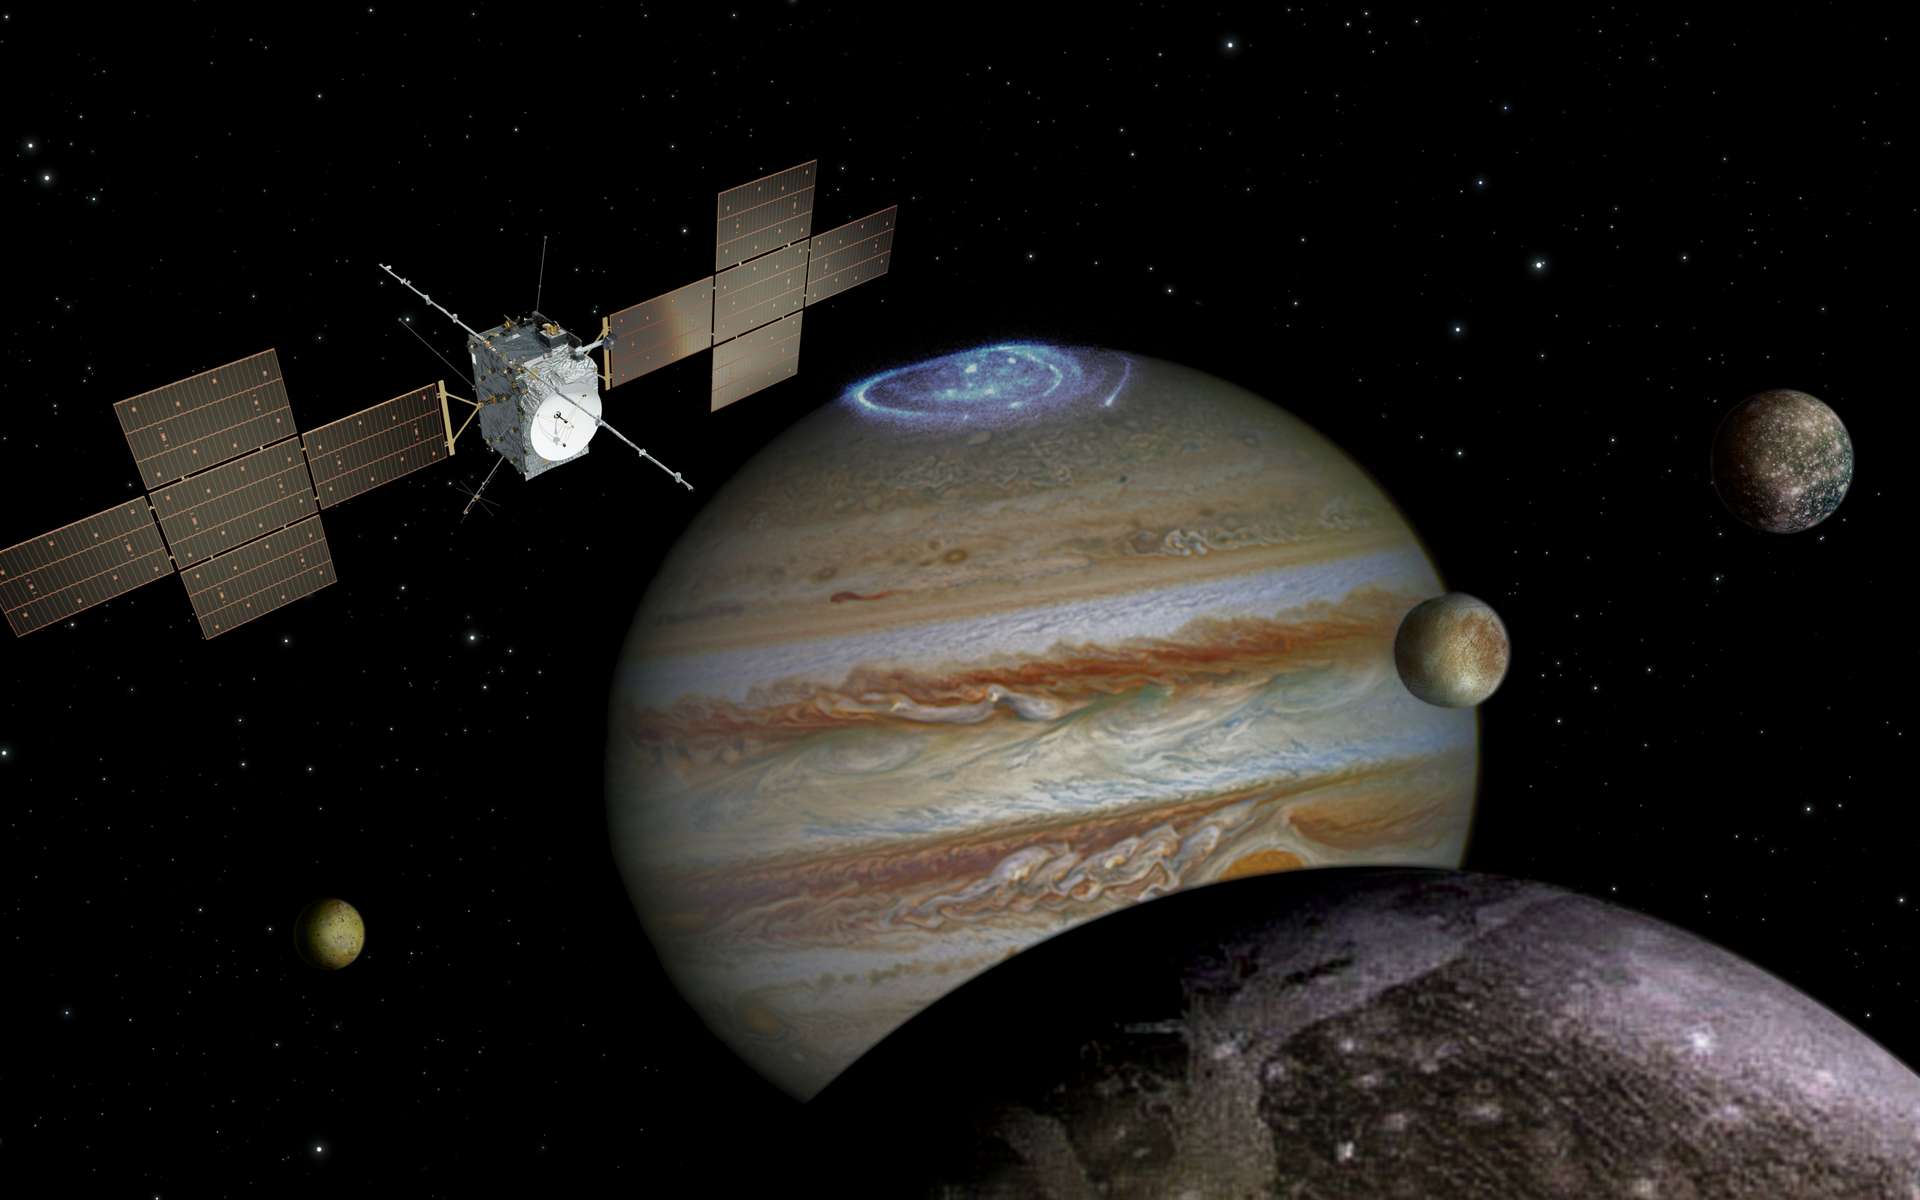 Vivez avec nous le 13 avril le lancement événement de la mission Juice vers Jupiter